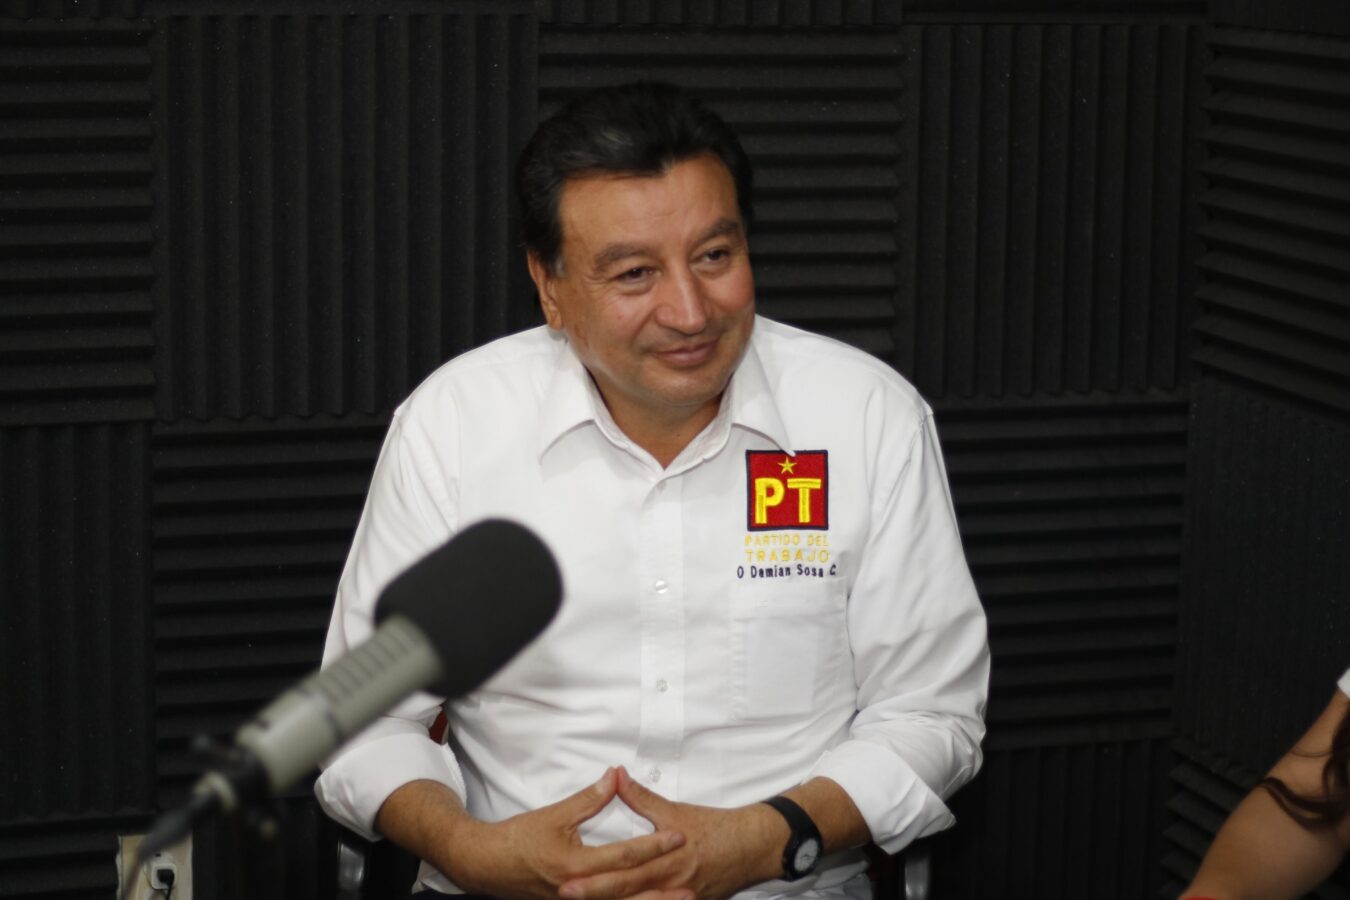 En Hidalgo el PT cerrará con fuerza: Damián Sosa